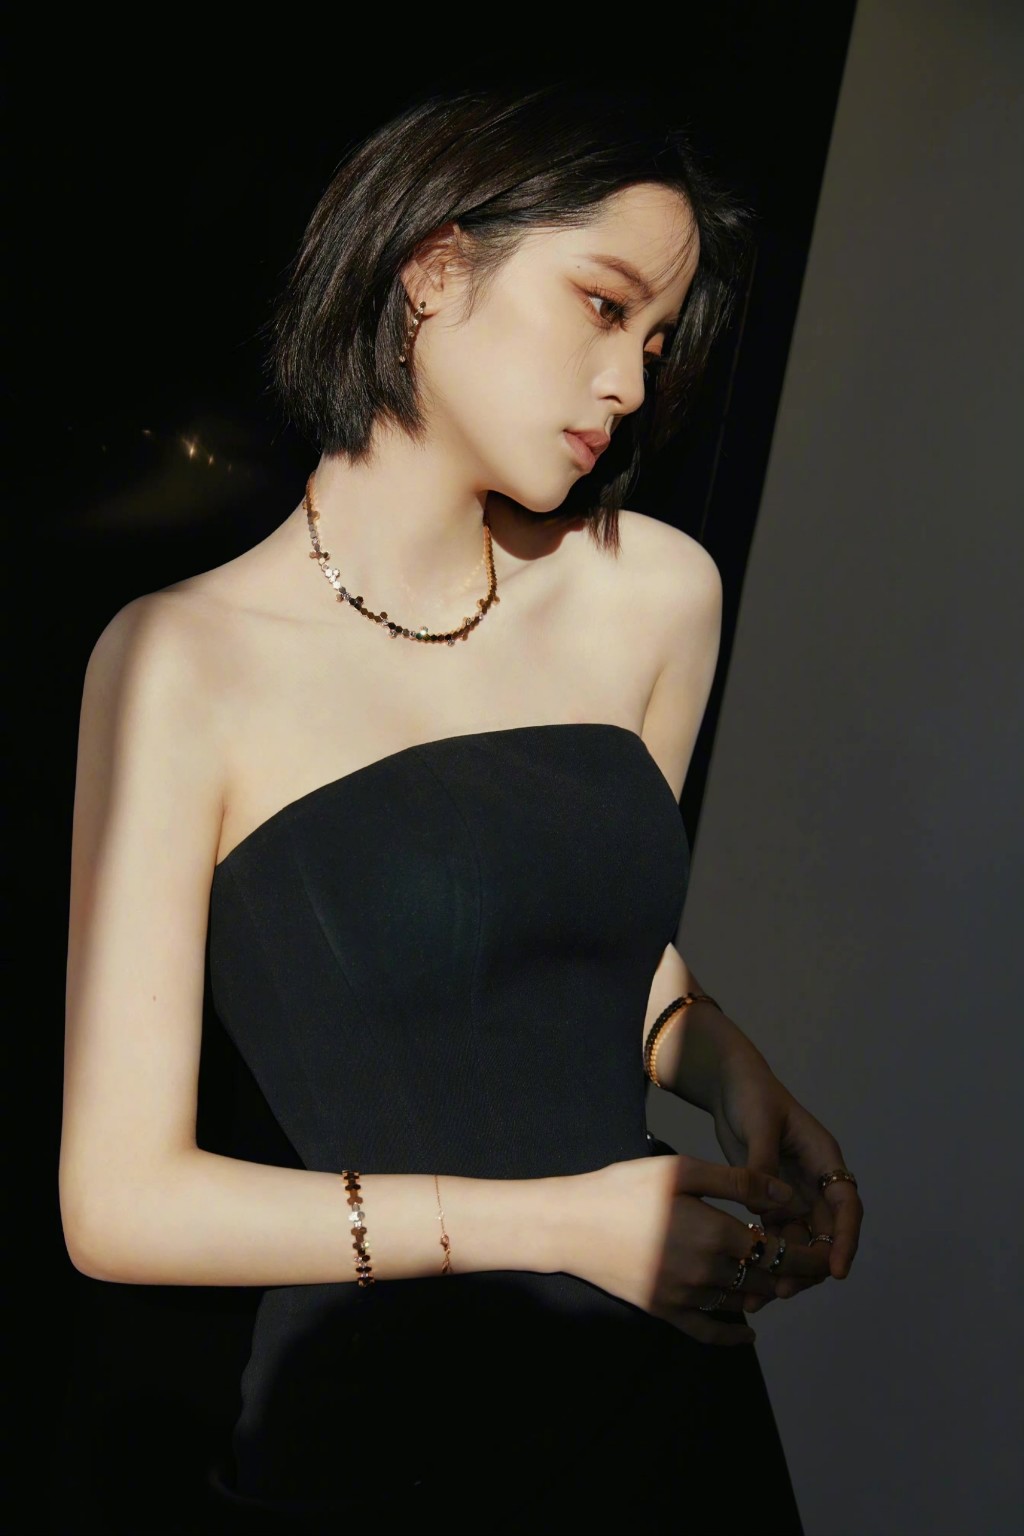 欧阳娜娜俏丽短发造型简约抹胸黑裙优雅时尚写真图片